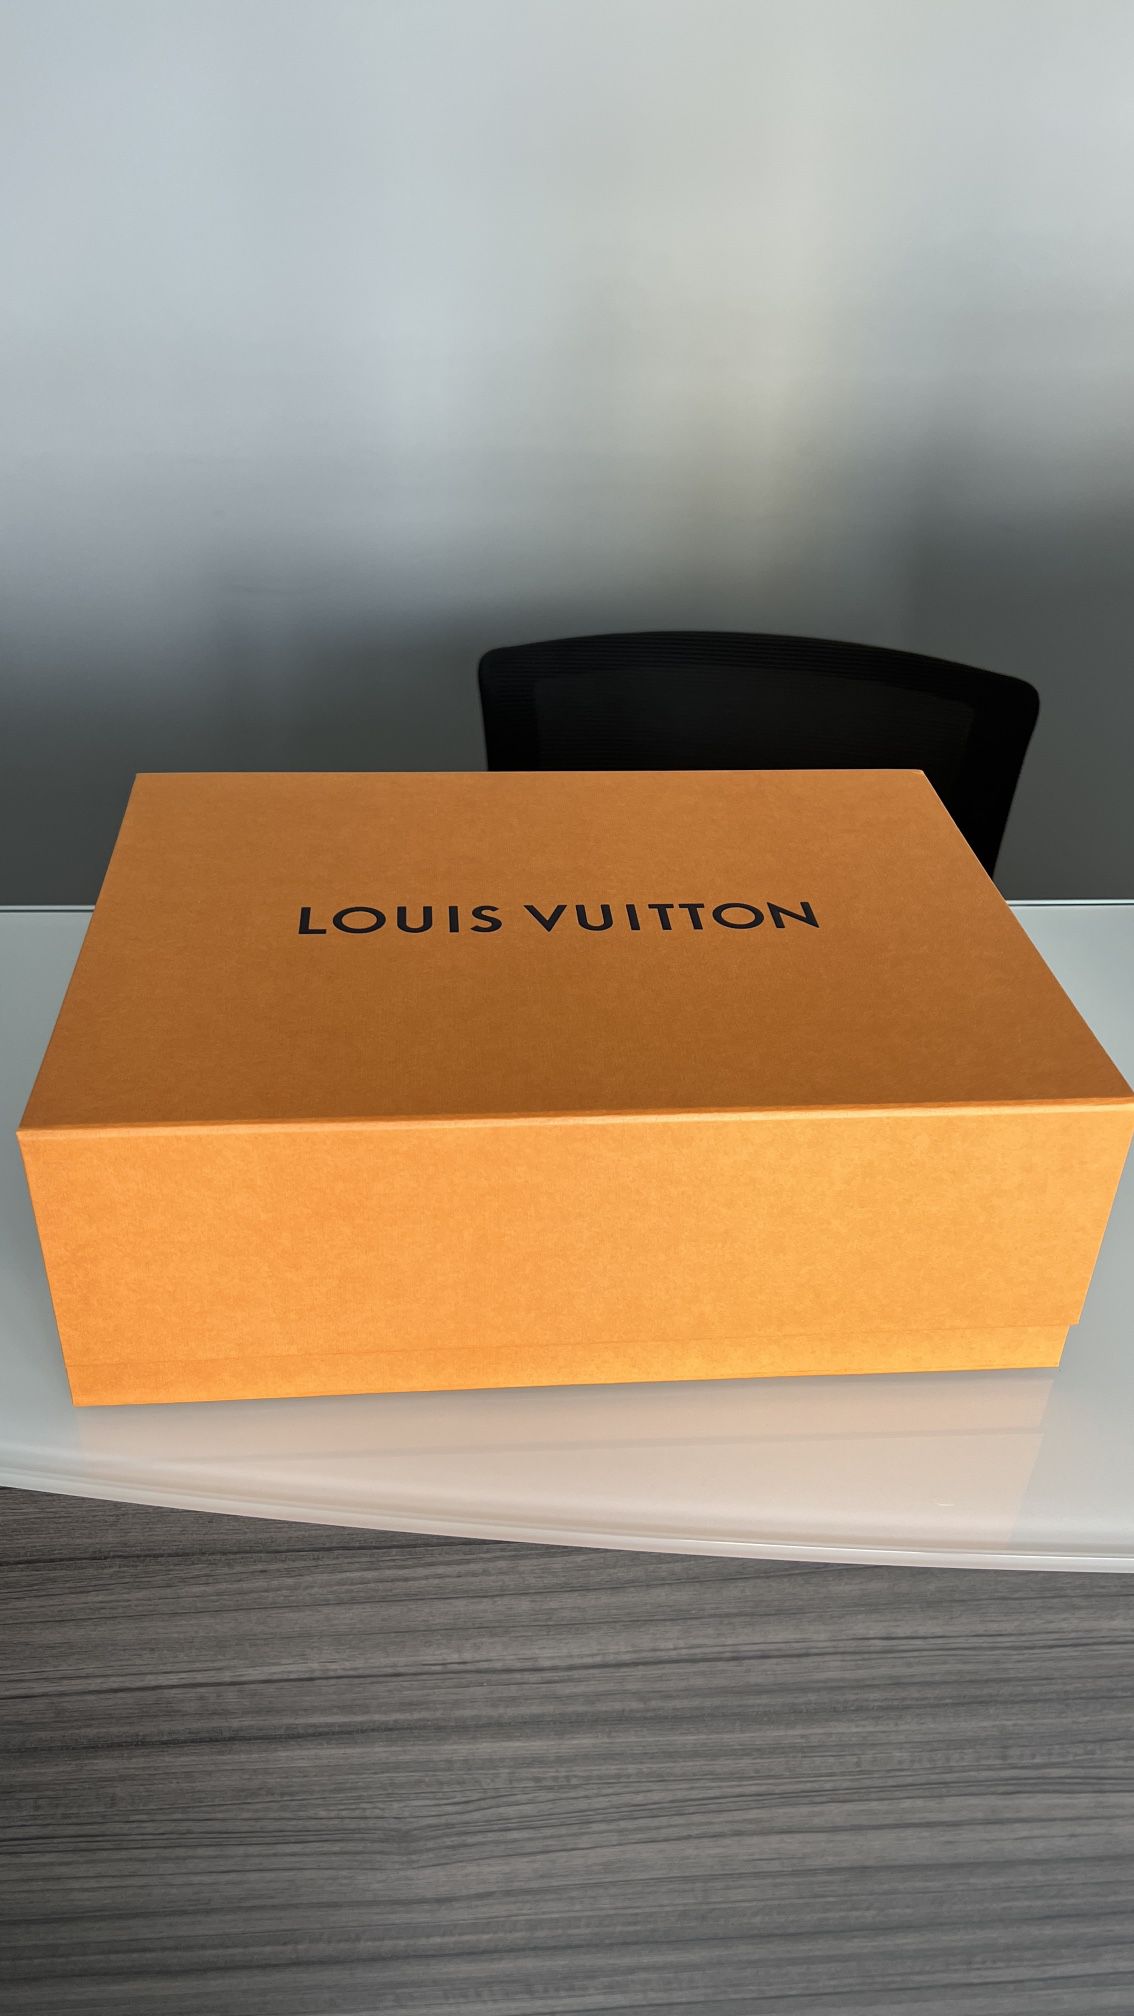 NEW Authentic Louis Vuitton Shoe/purse Box (empty) 14 x 10.5 x 5